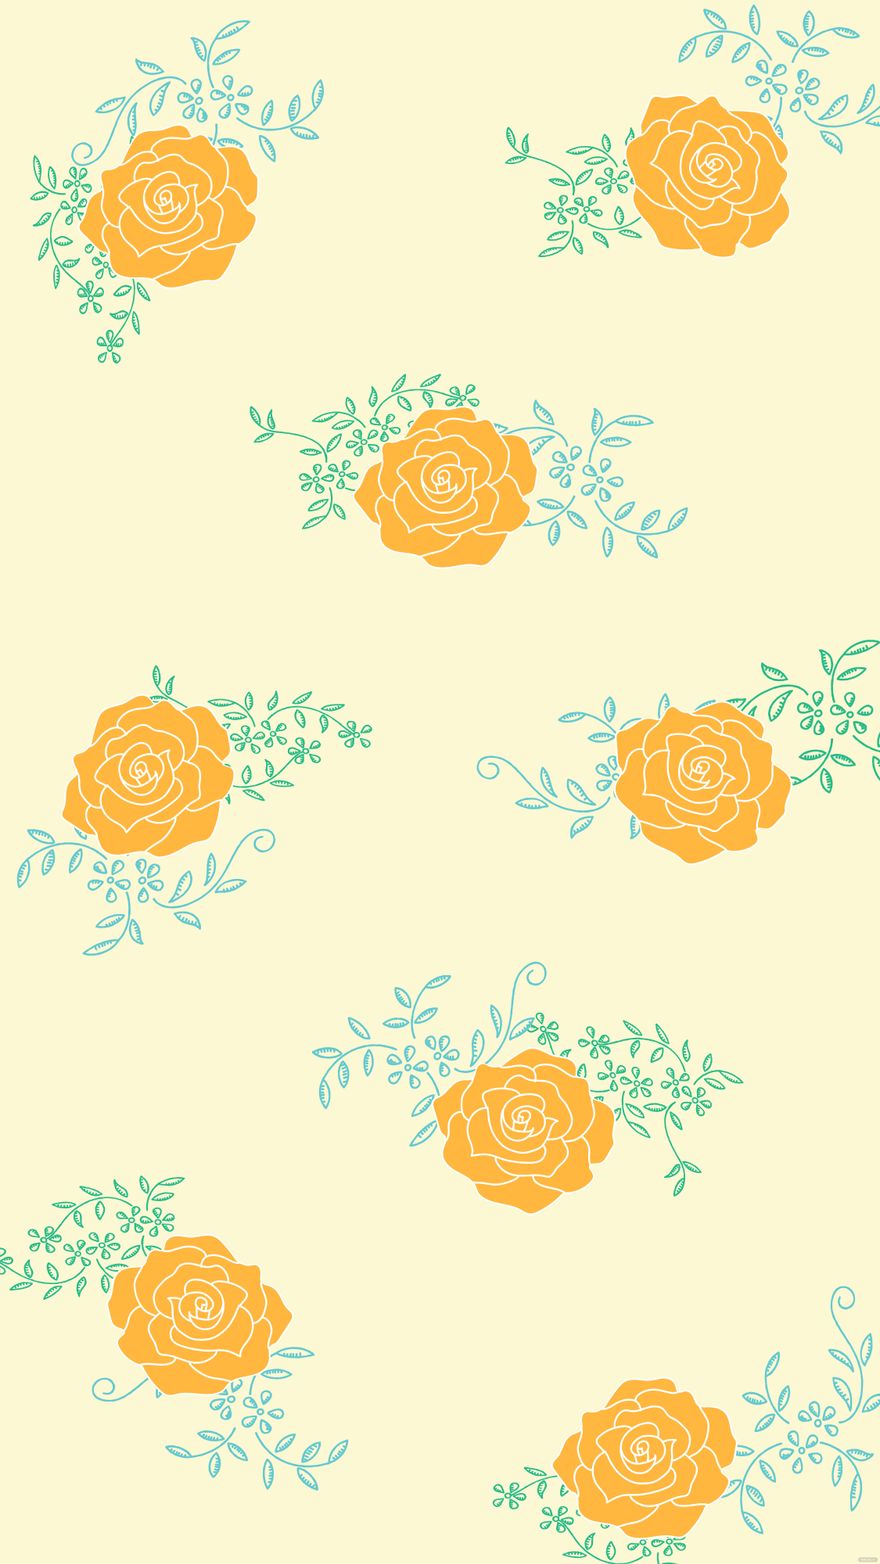 Ornamental Summer Floral Background in Illustrator, EPS, SVG, JPG